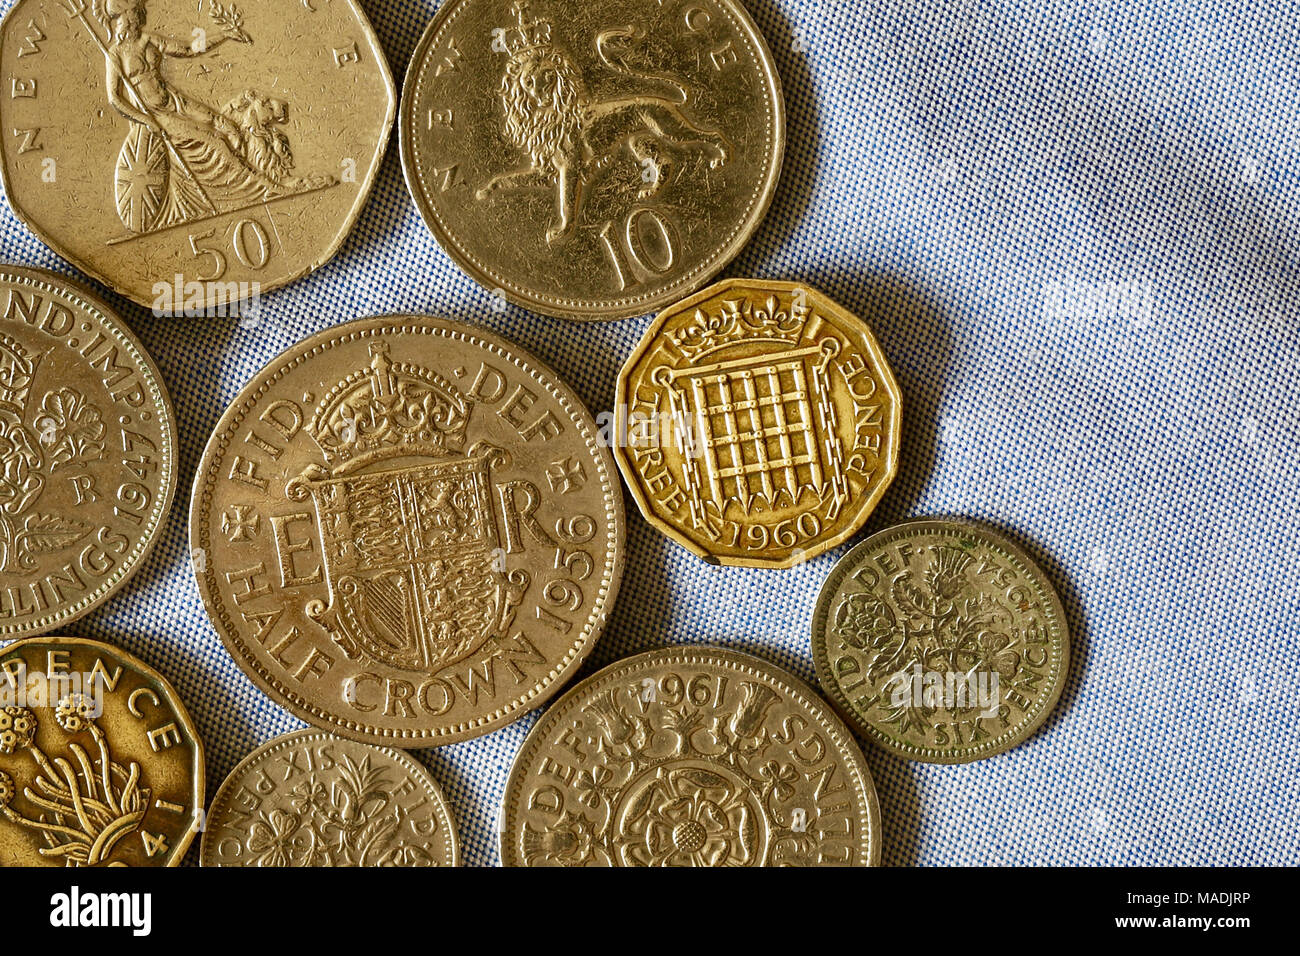 Die britische Identität und Nostalgie für die Vergangenheit. Münzen aus der Dezimal- und frühen dezimal Epochen einschließlich der Hälfte der Krone und zwei shilling Stücke. Stockfoto